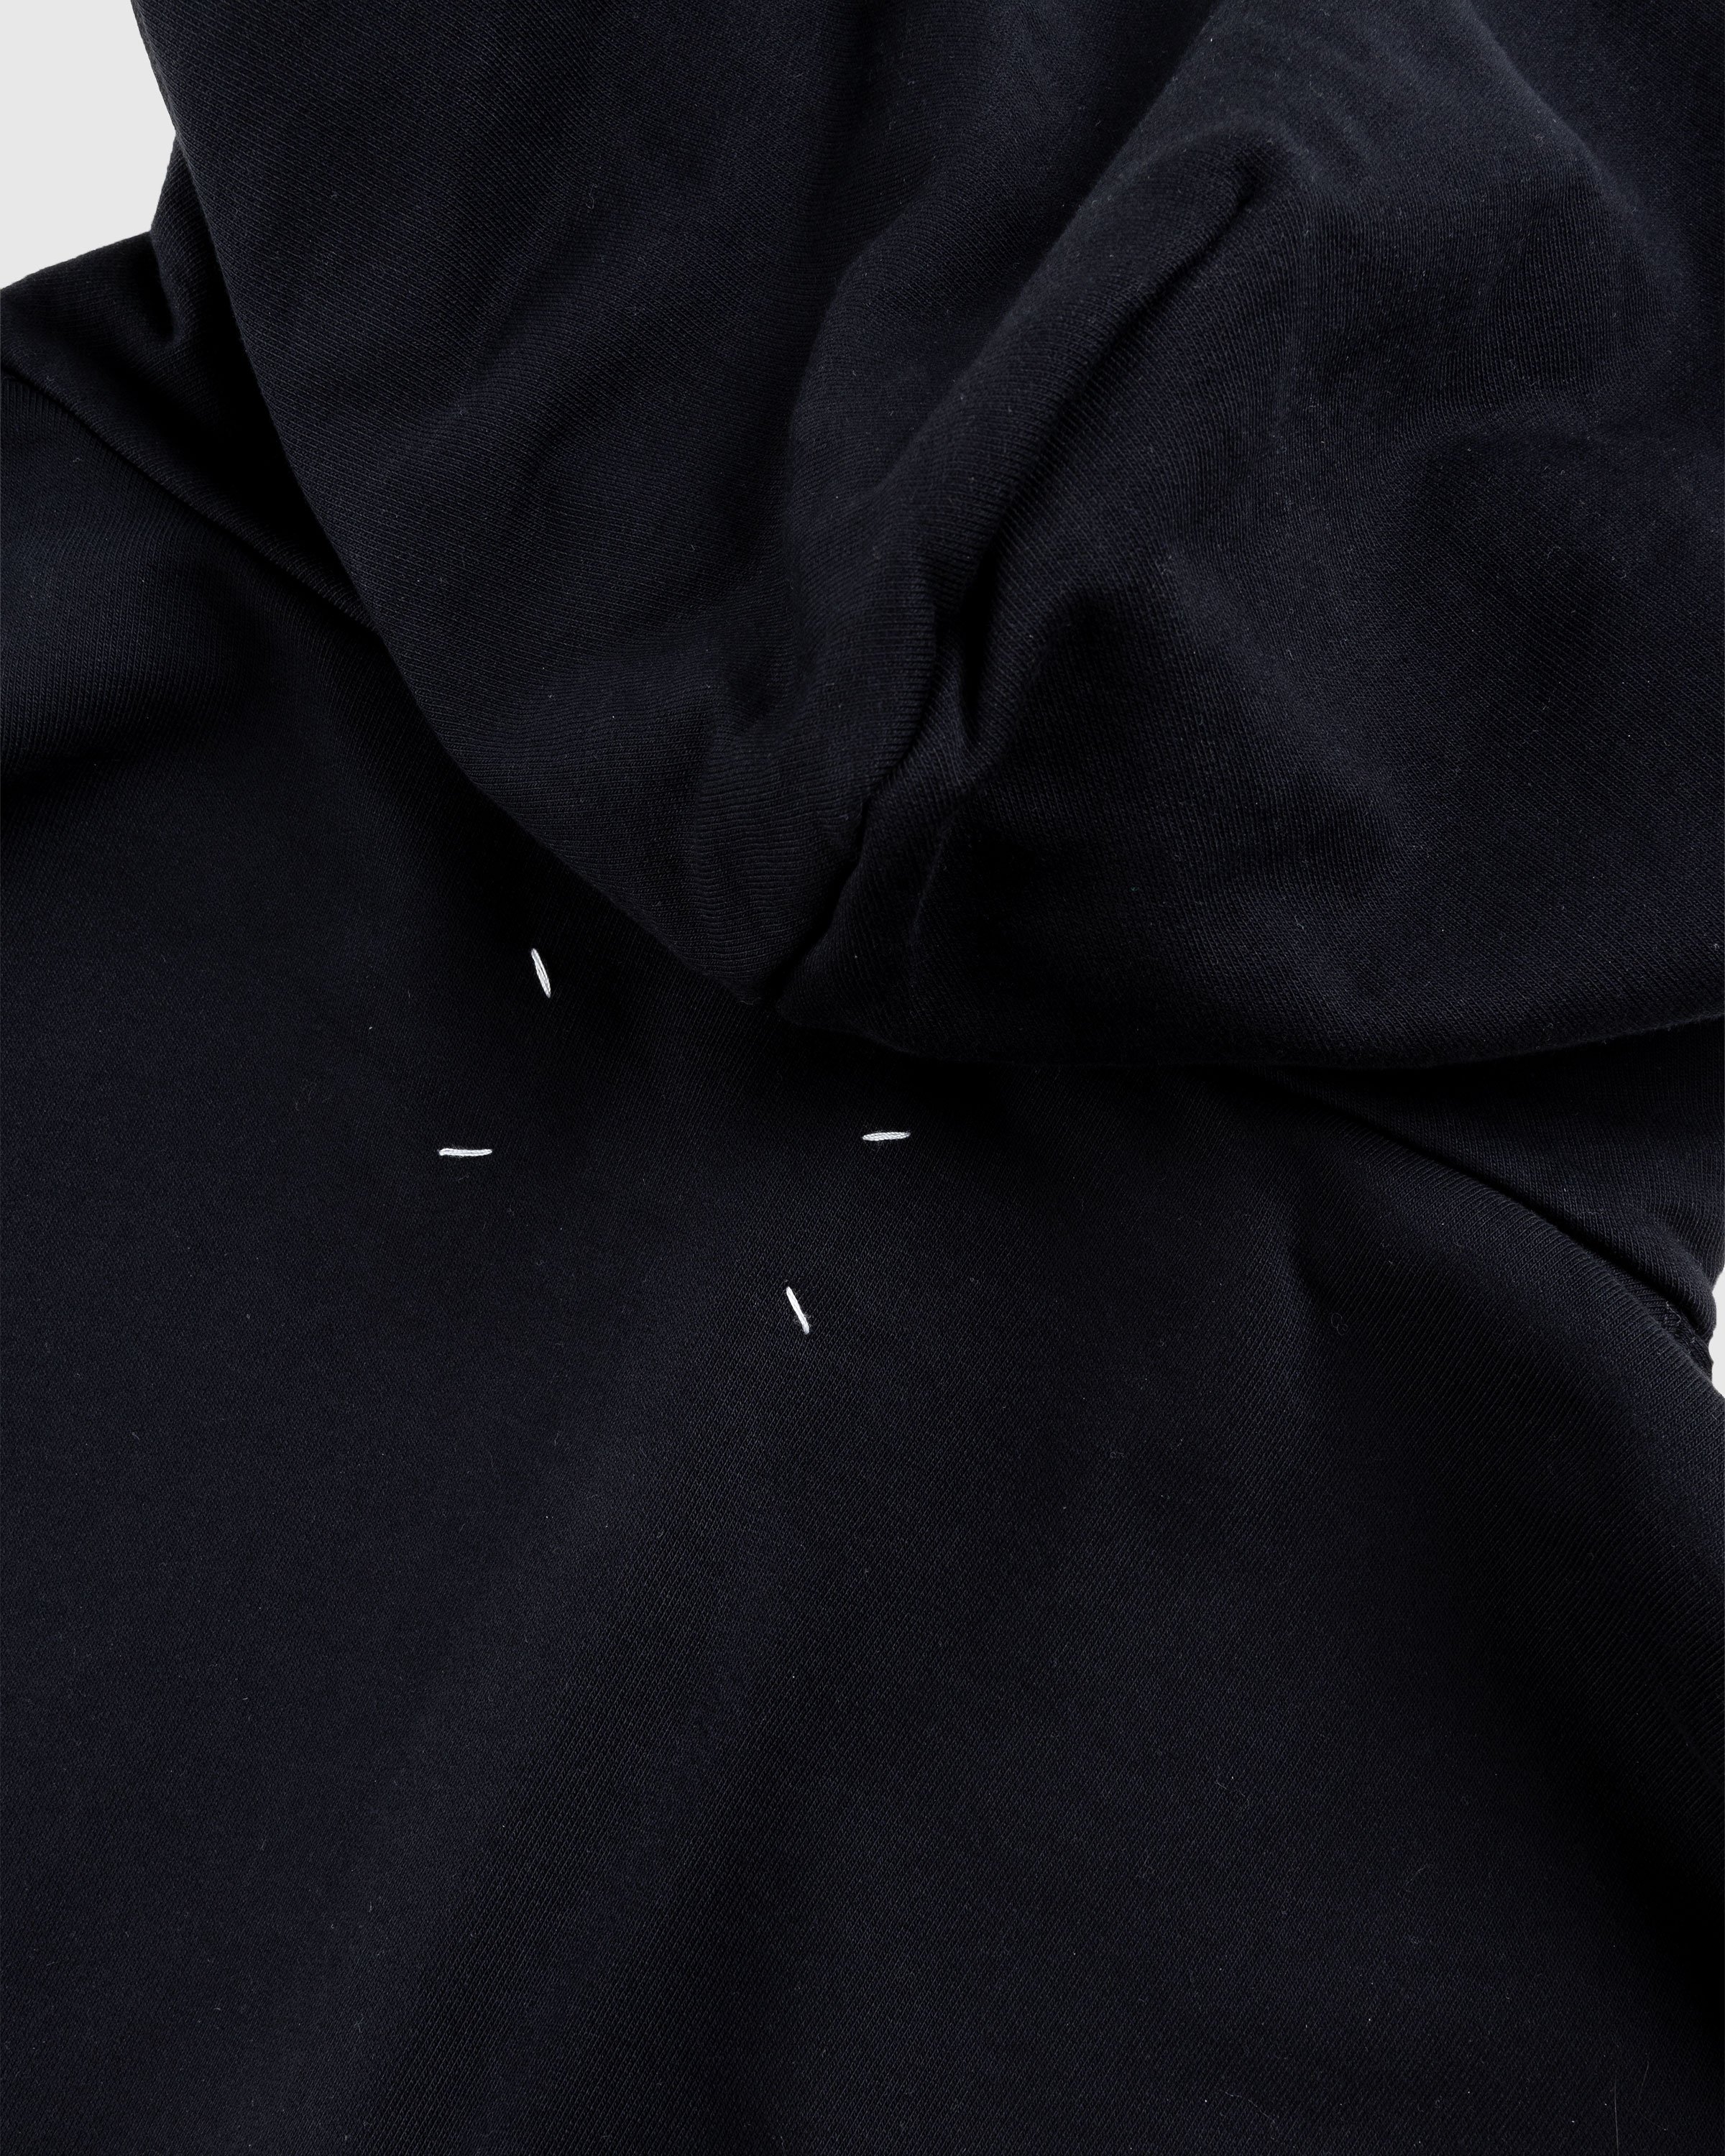 Maison Margiela - Numerical Logo Hoodie Black - Clothing - Black - Image 6